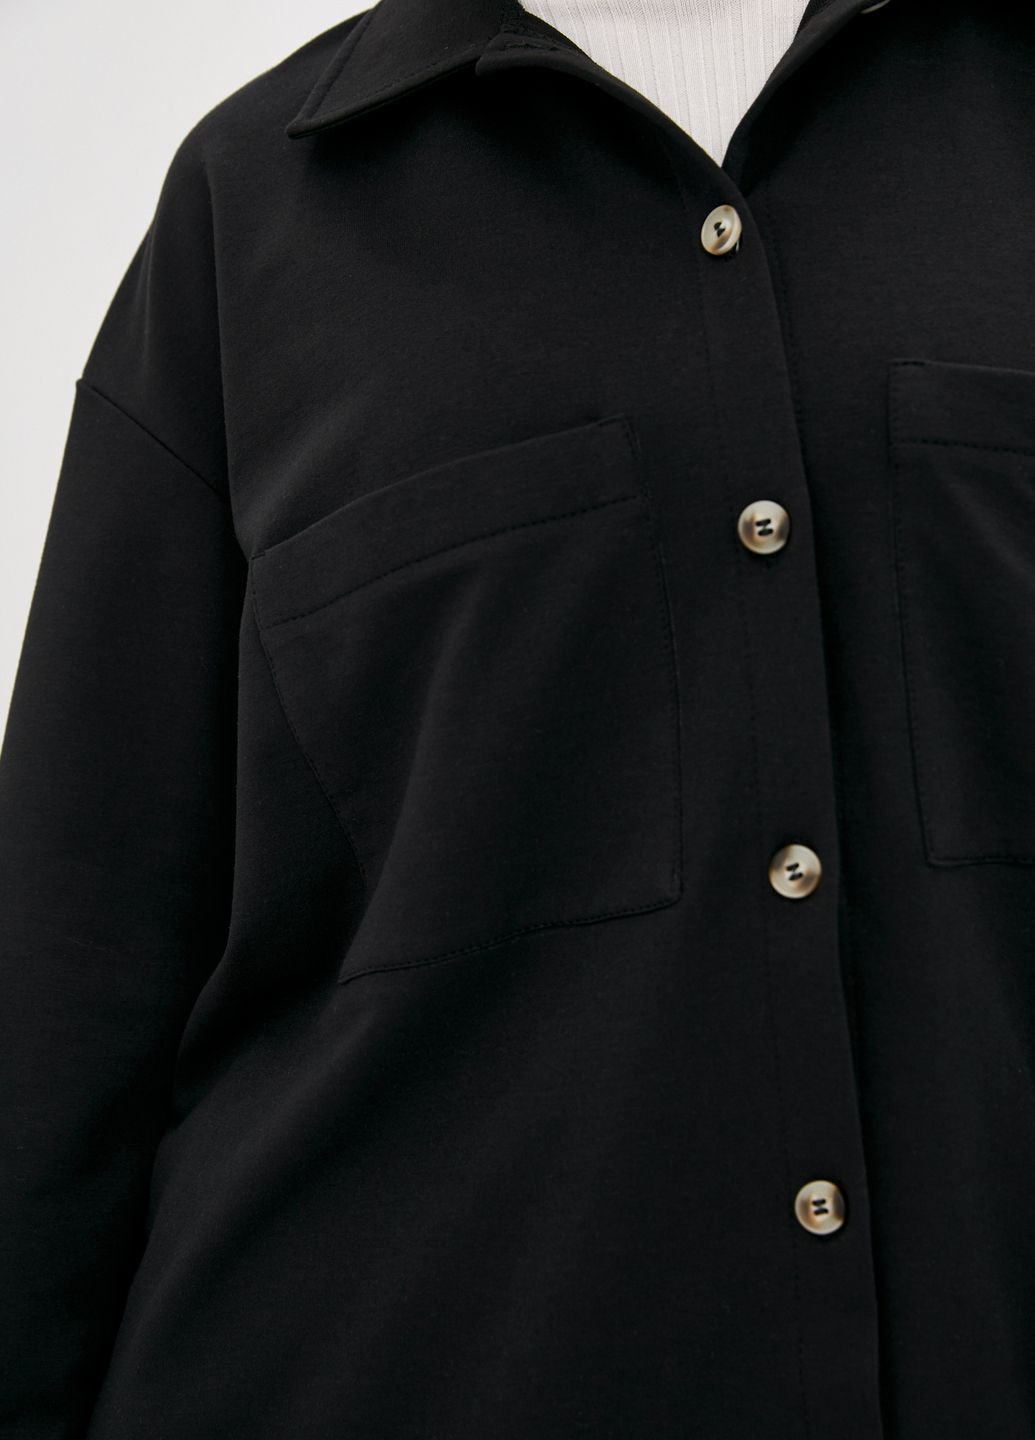 Купить Рубашка женская трикотажная оверсайз Merlini Йорк 200000058 - Черный, 42-44 в интернет-магазине